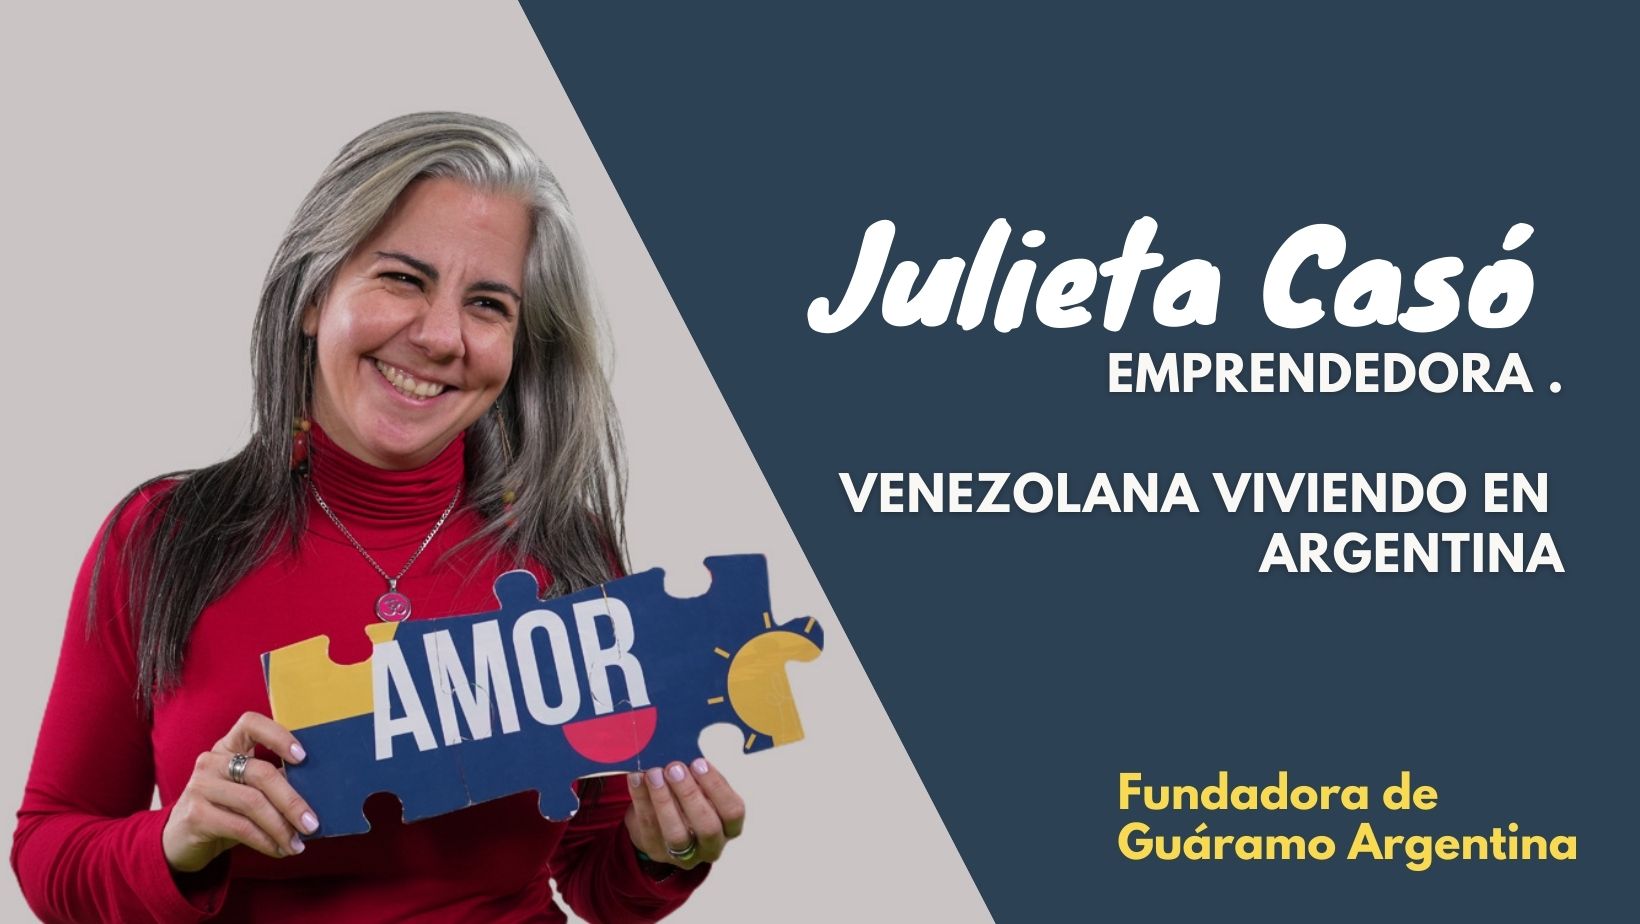 Julieta Casó, agente de cambio y emprendedora